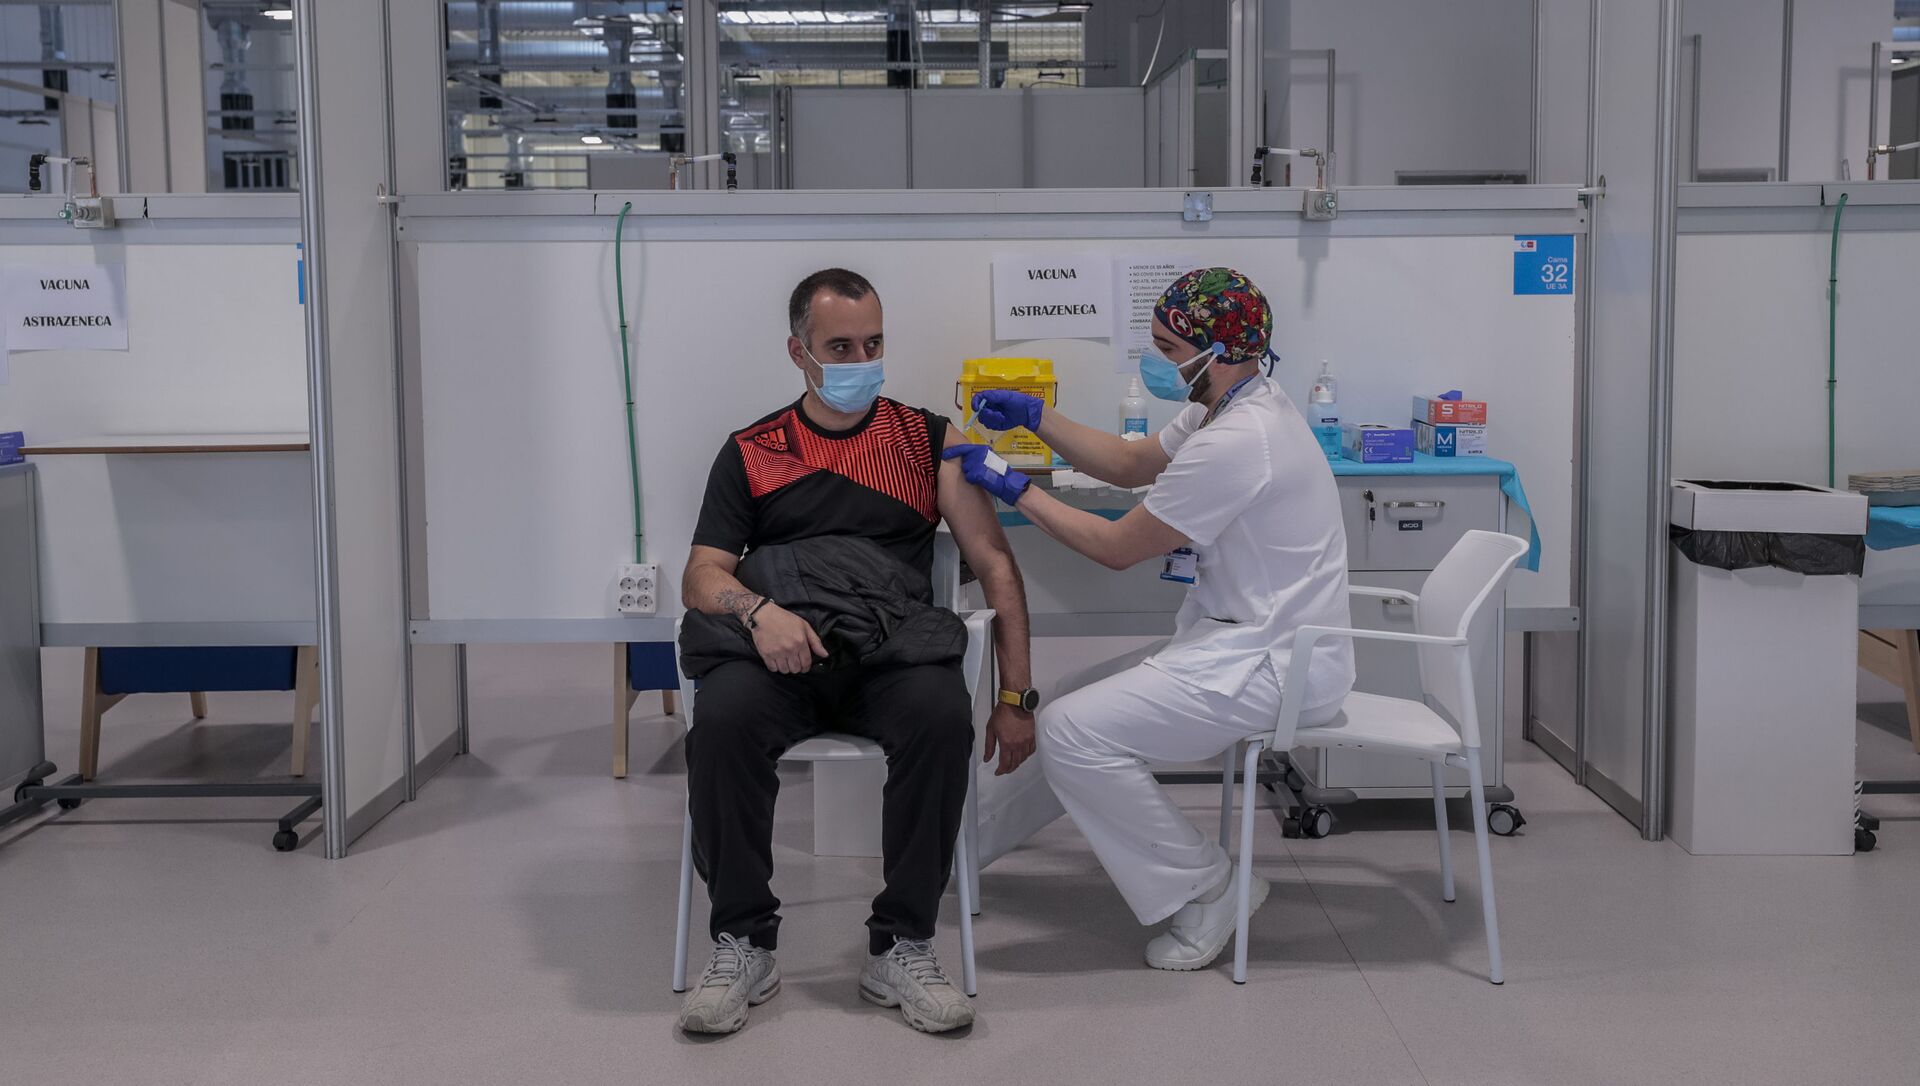 Мужчина получает вакцину AstraZeneca в больнице Мадрида - Sputnik 日本, 1920, 23.03.2021